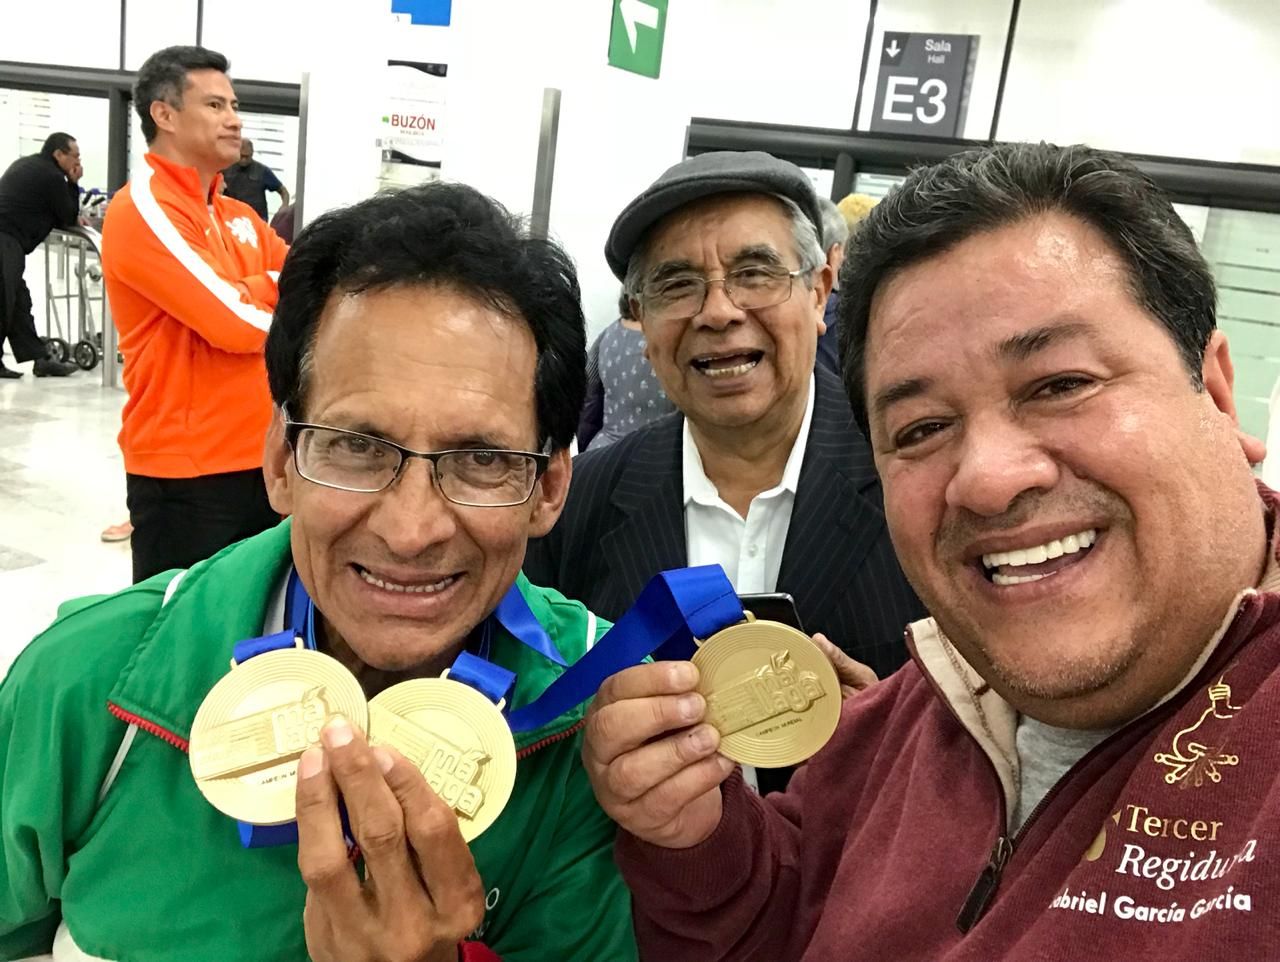 Comisión del deporte de Texcoco recibe a tricampeón del Mundo de Atletismo Master